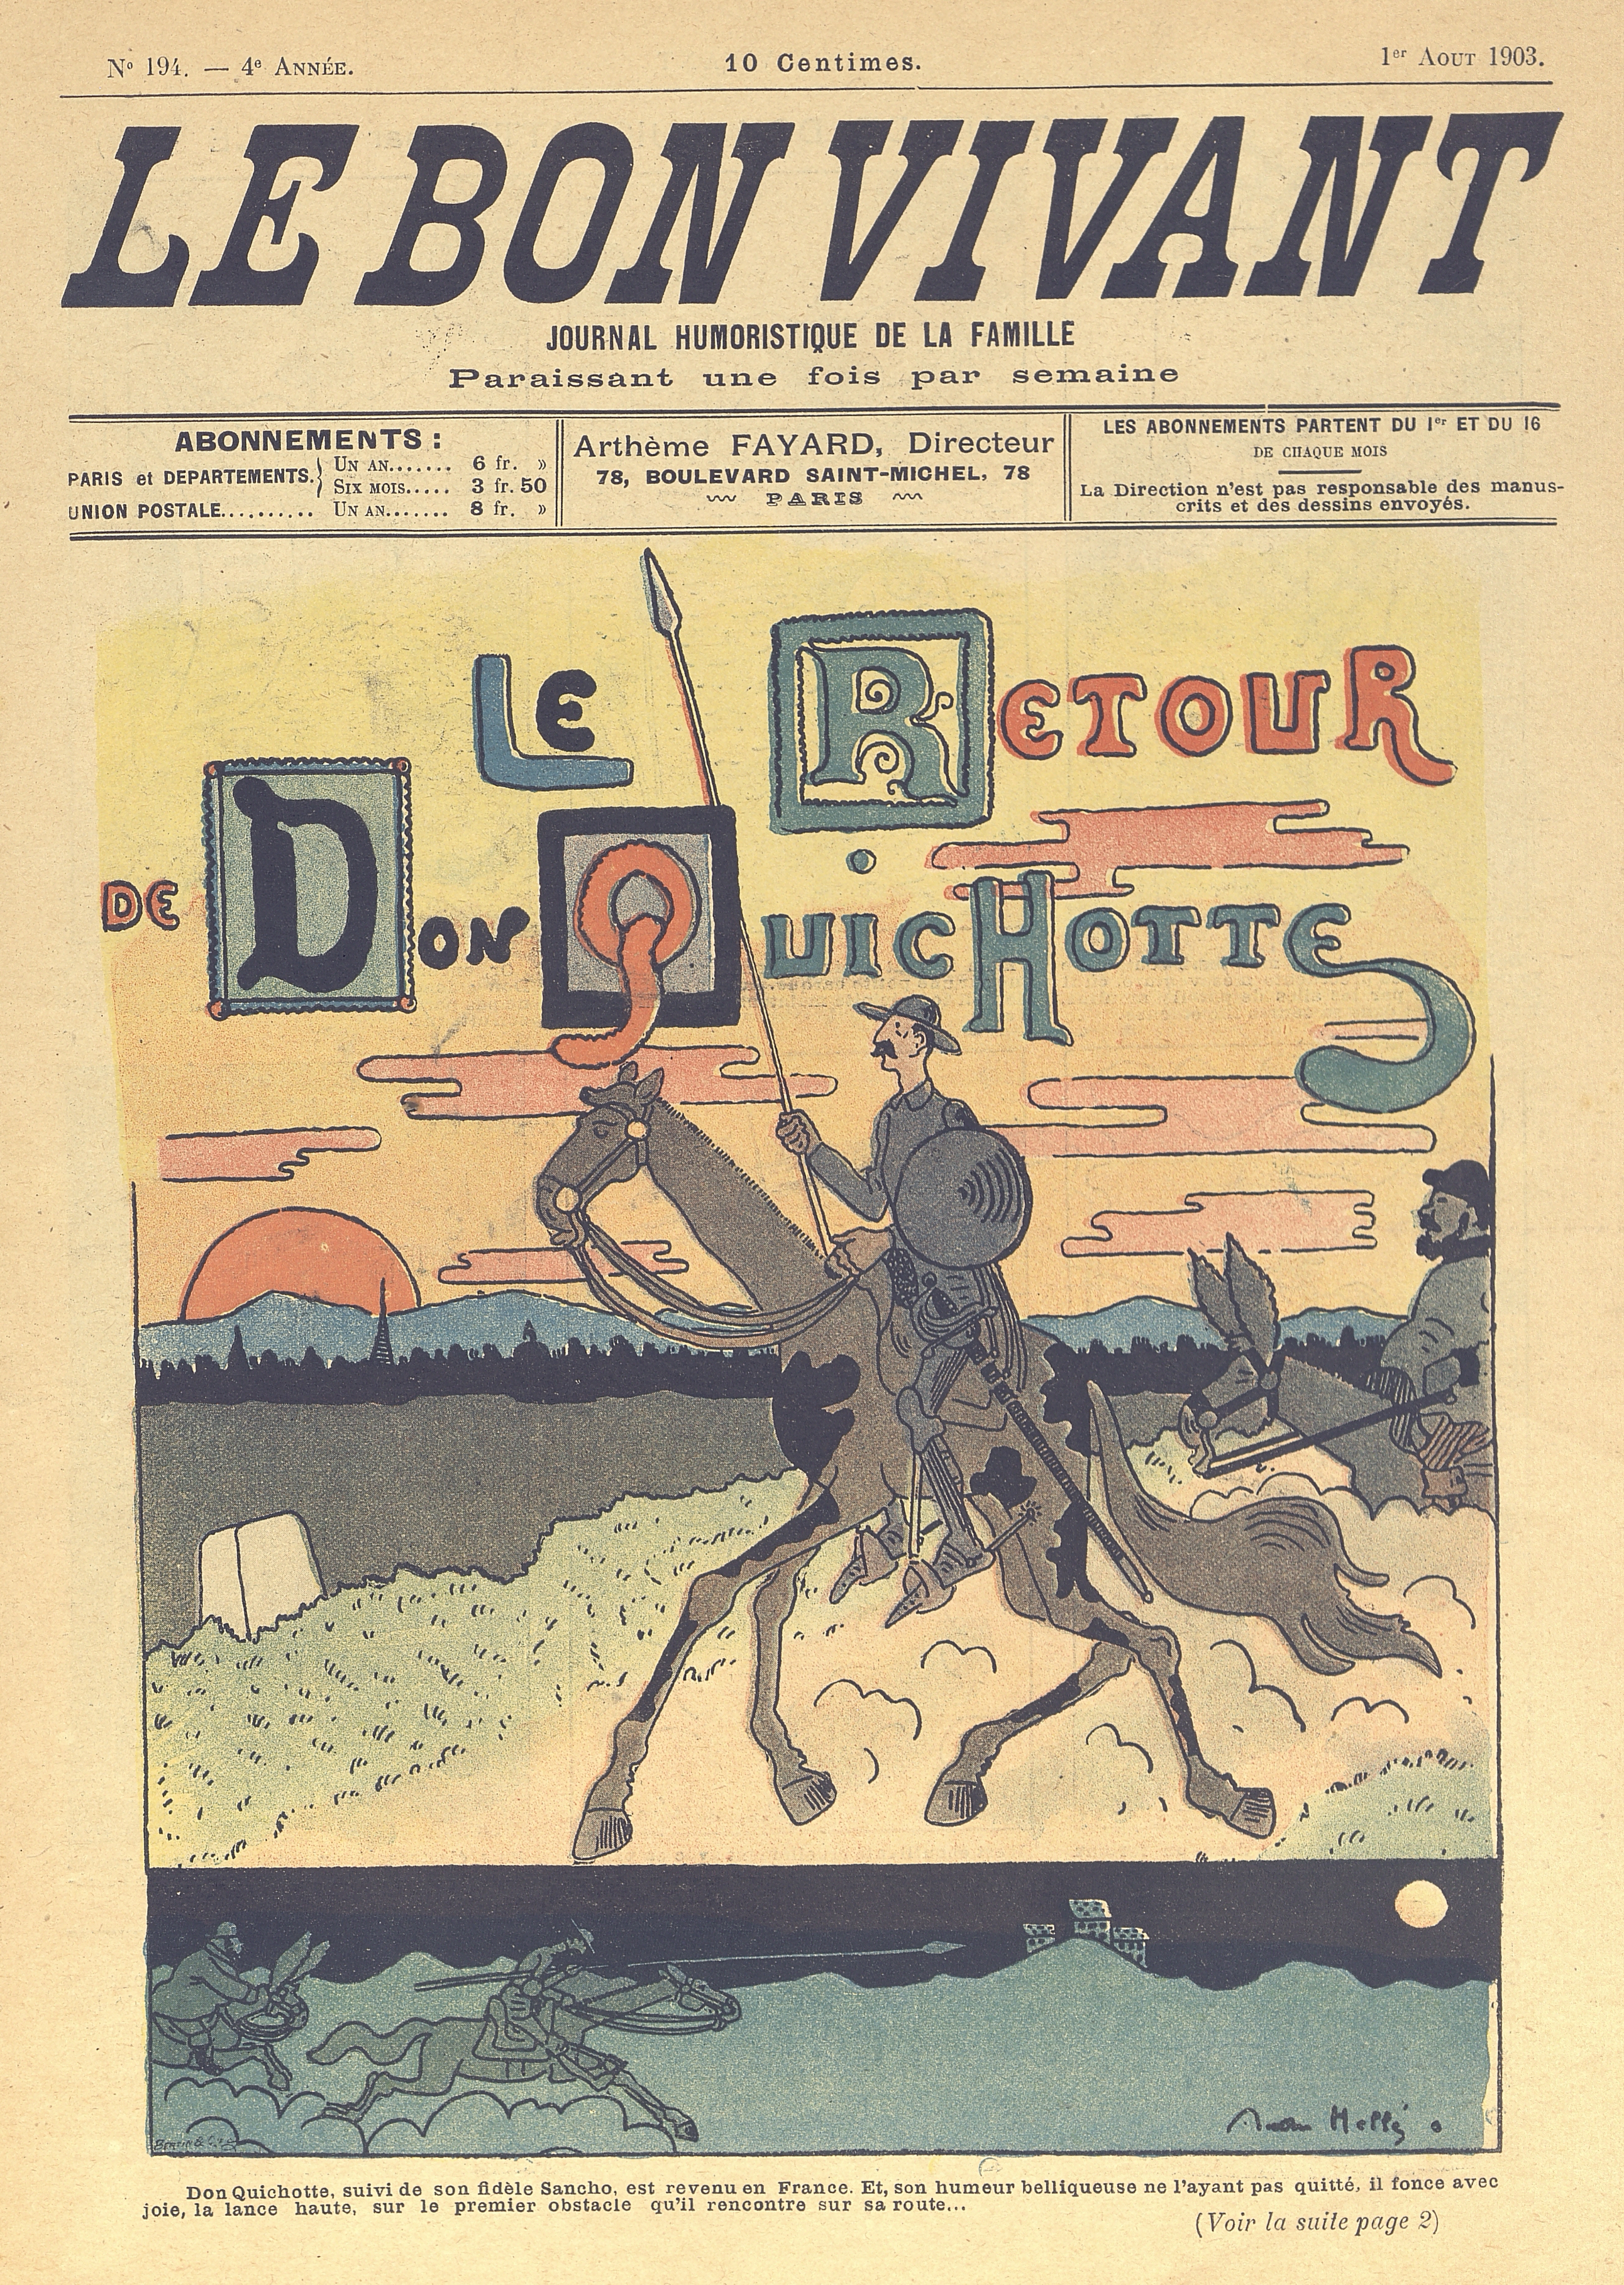  Le retour de Don Quichotte, portada